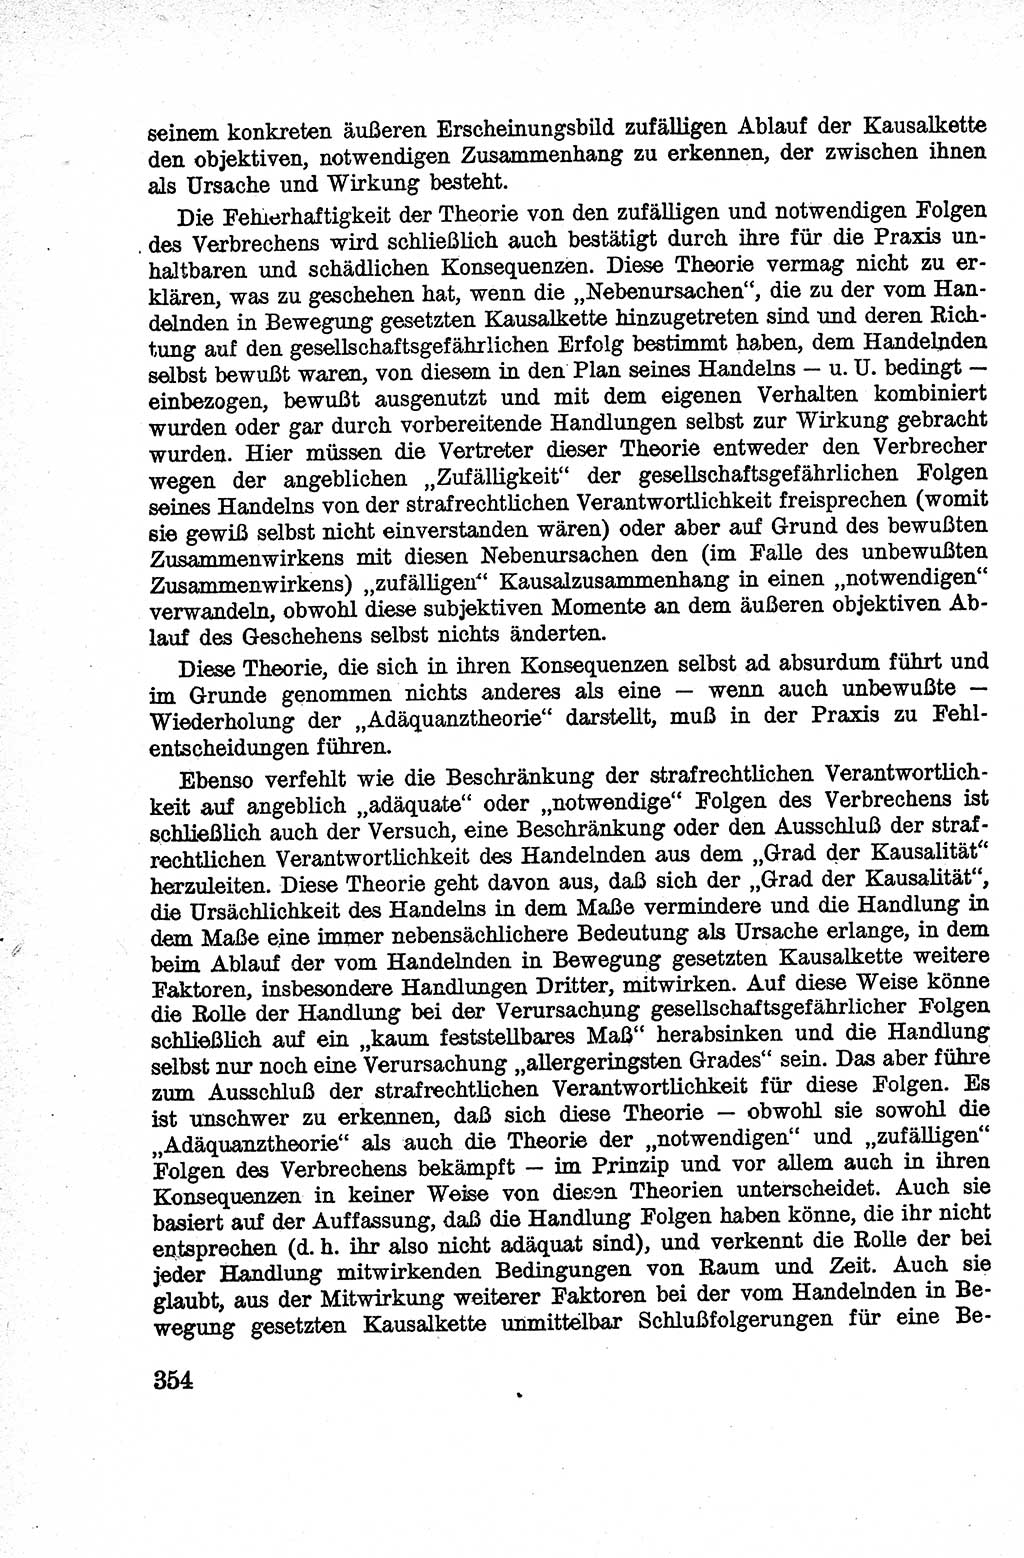 Lehrbuch des Strafrechts der Deutschen Demokratischen Republik (DDR), Allgemeiner Teil 1959, Seite 354 (Lb. Strafr. DDR AT 1959, S. 354)